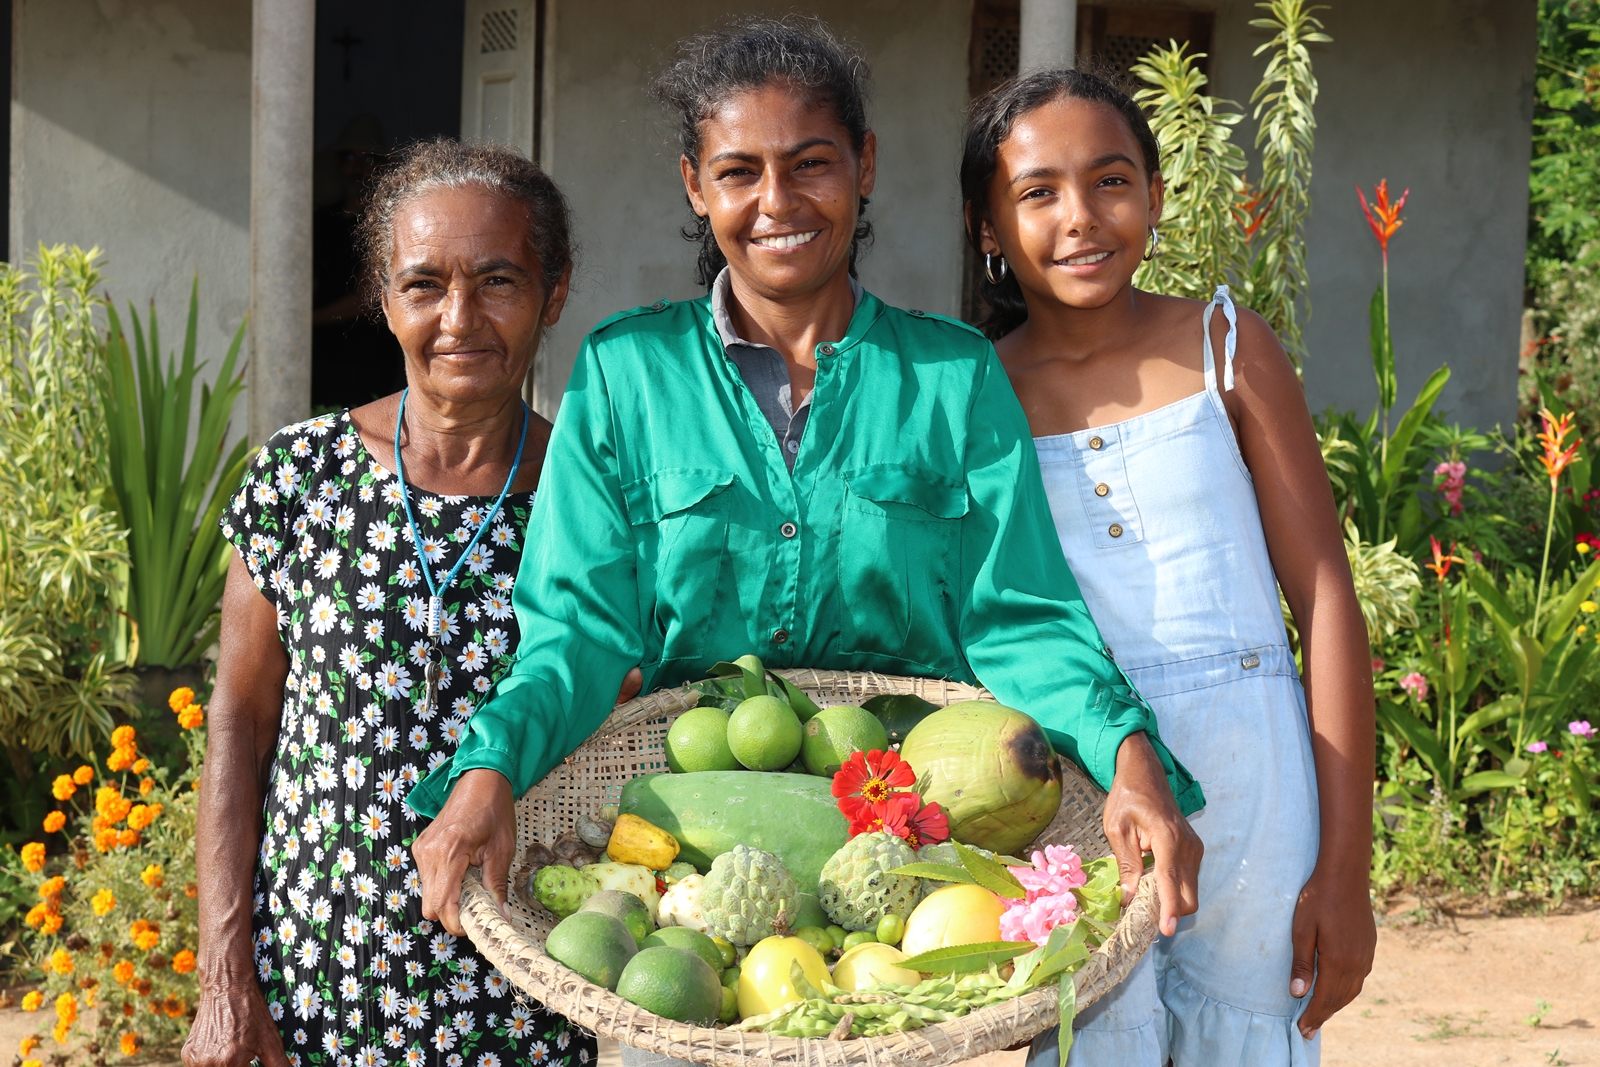 Cristina, sua mãe e sua filha, três gerações de luta e amor pela terra / Foto: Allan Suzart - MOC / ActionAid